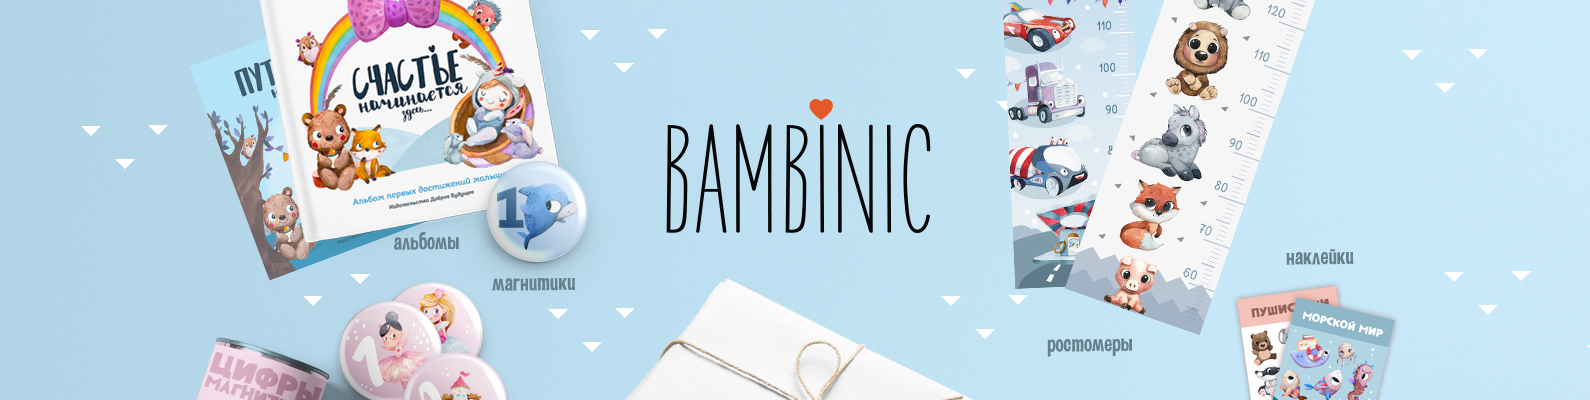 BAMBINIC - добрый бизнес для мам 1884b7e0cdb8d94517c93101eb33e581